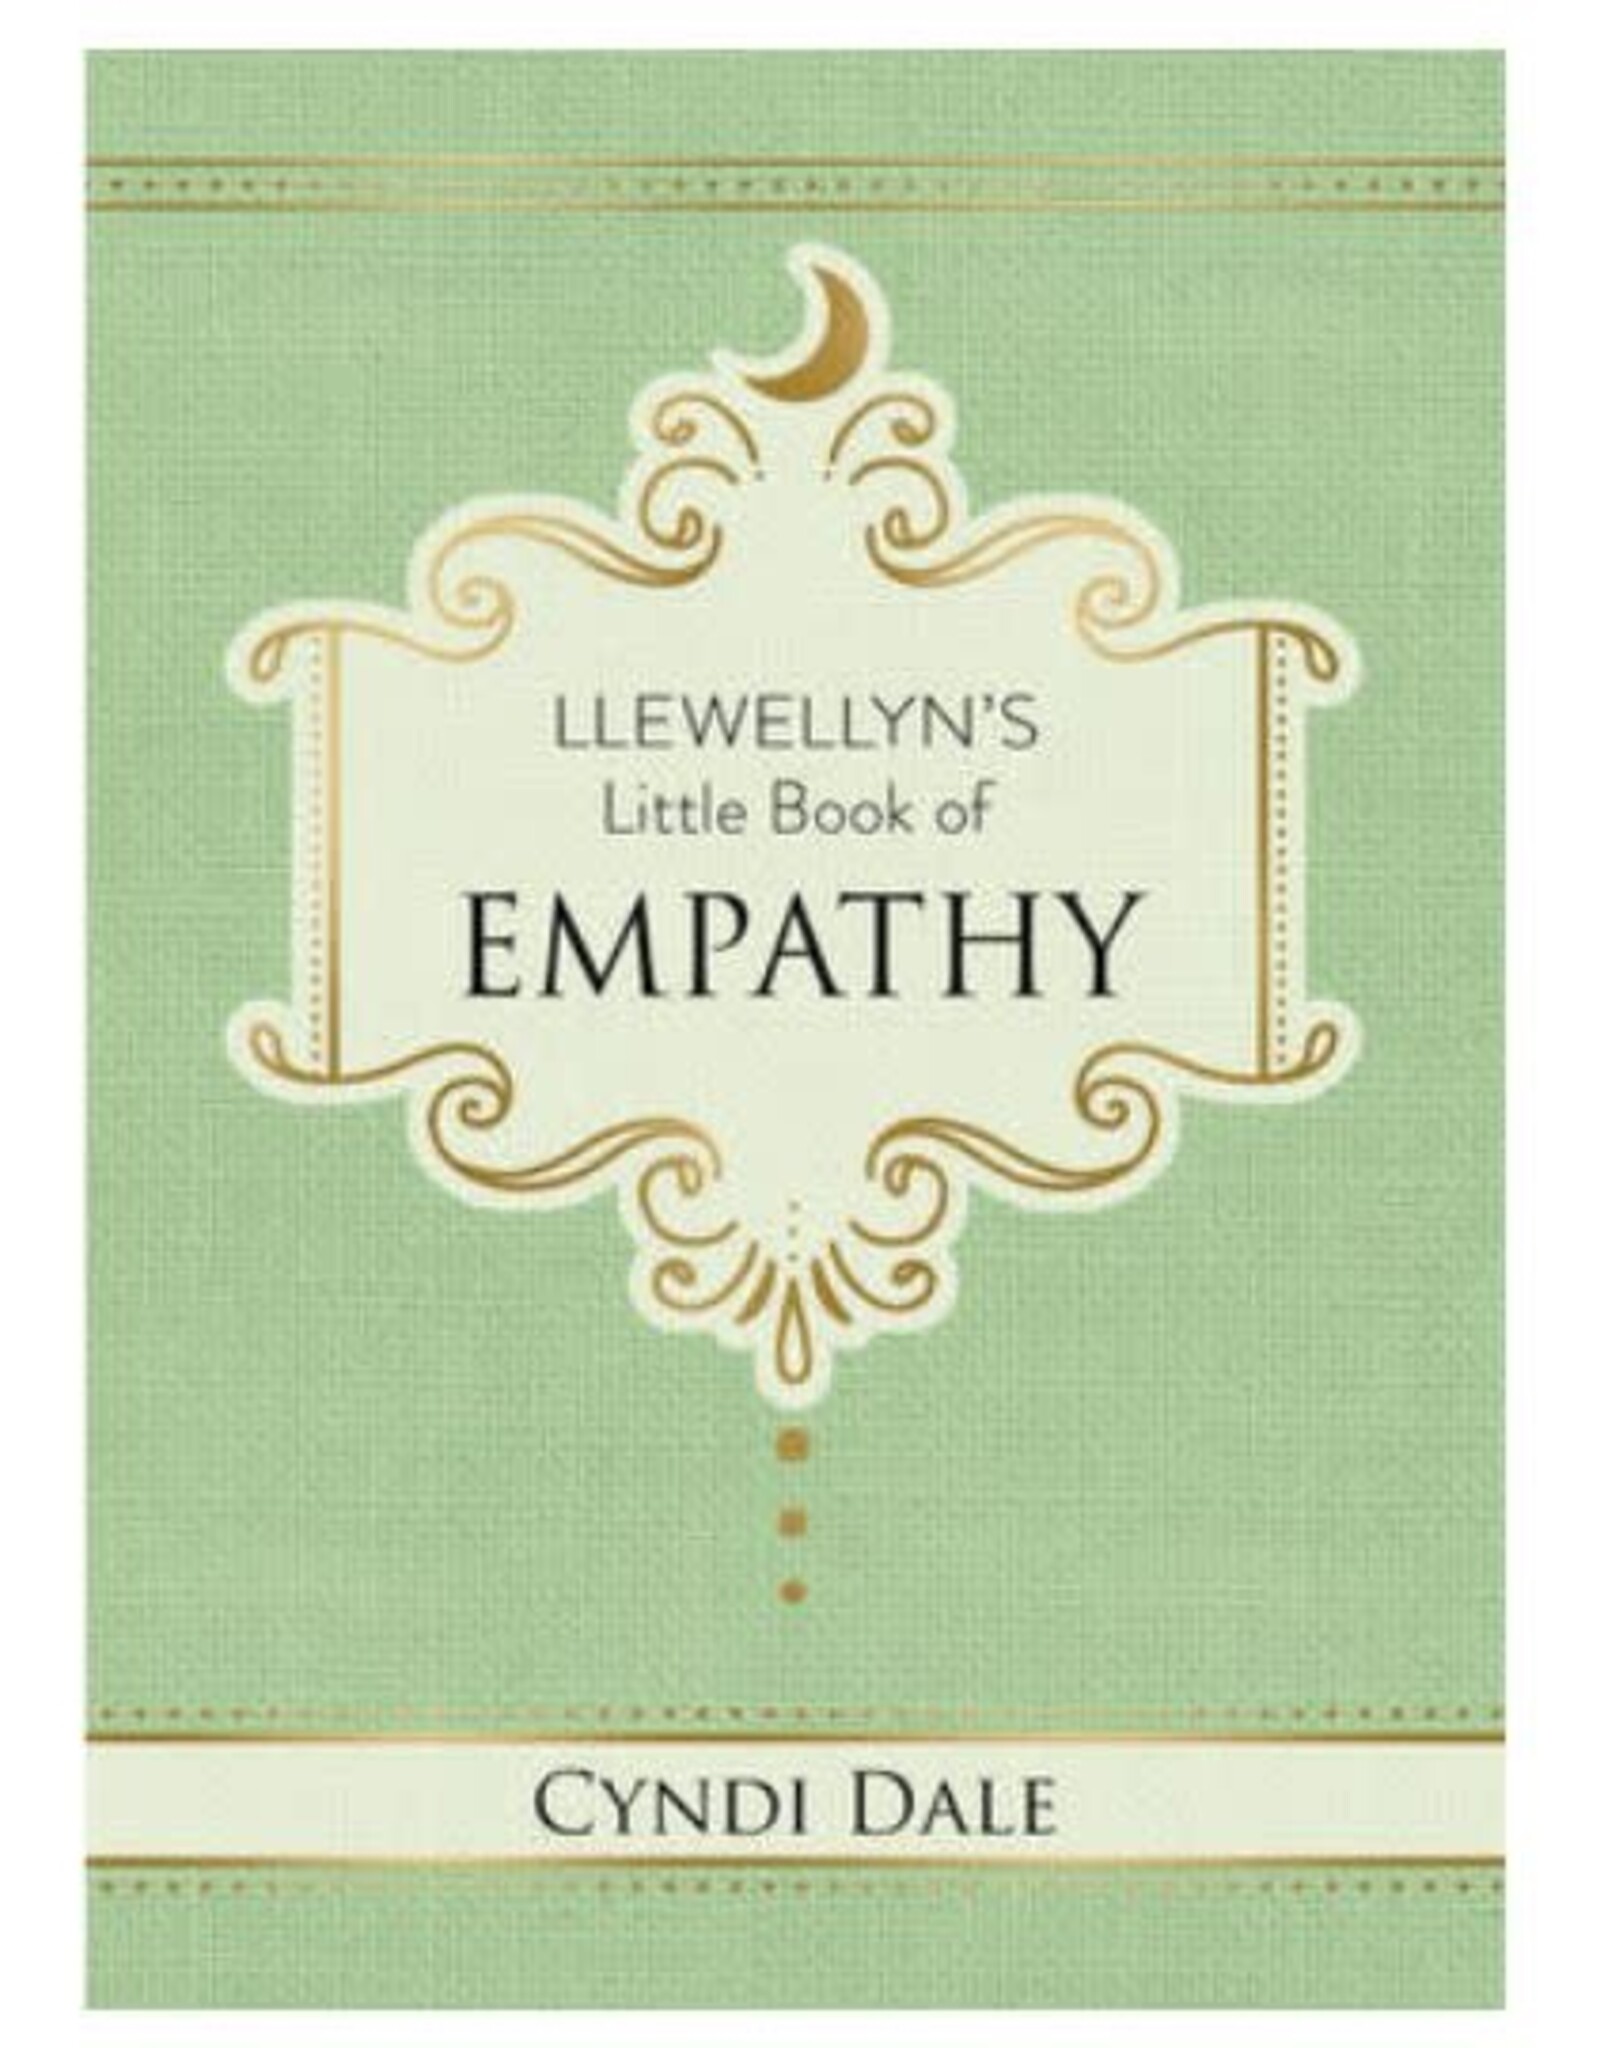 Llewellyn's Little Book of Empathy by Cyndi Dale